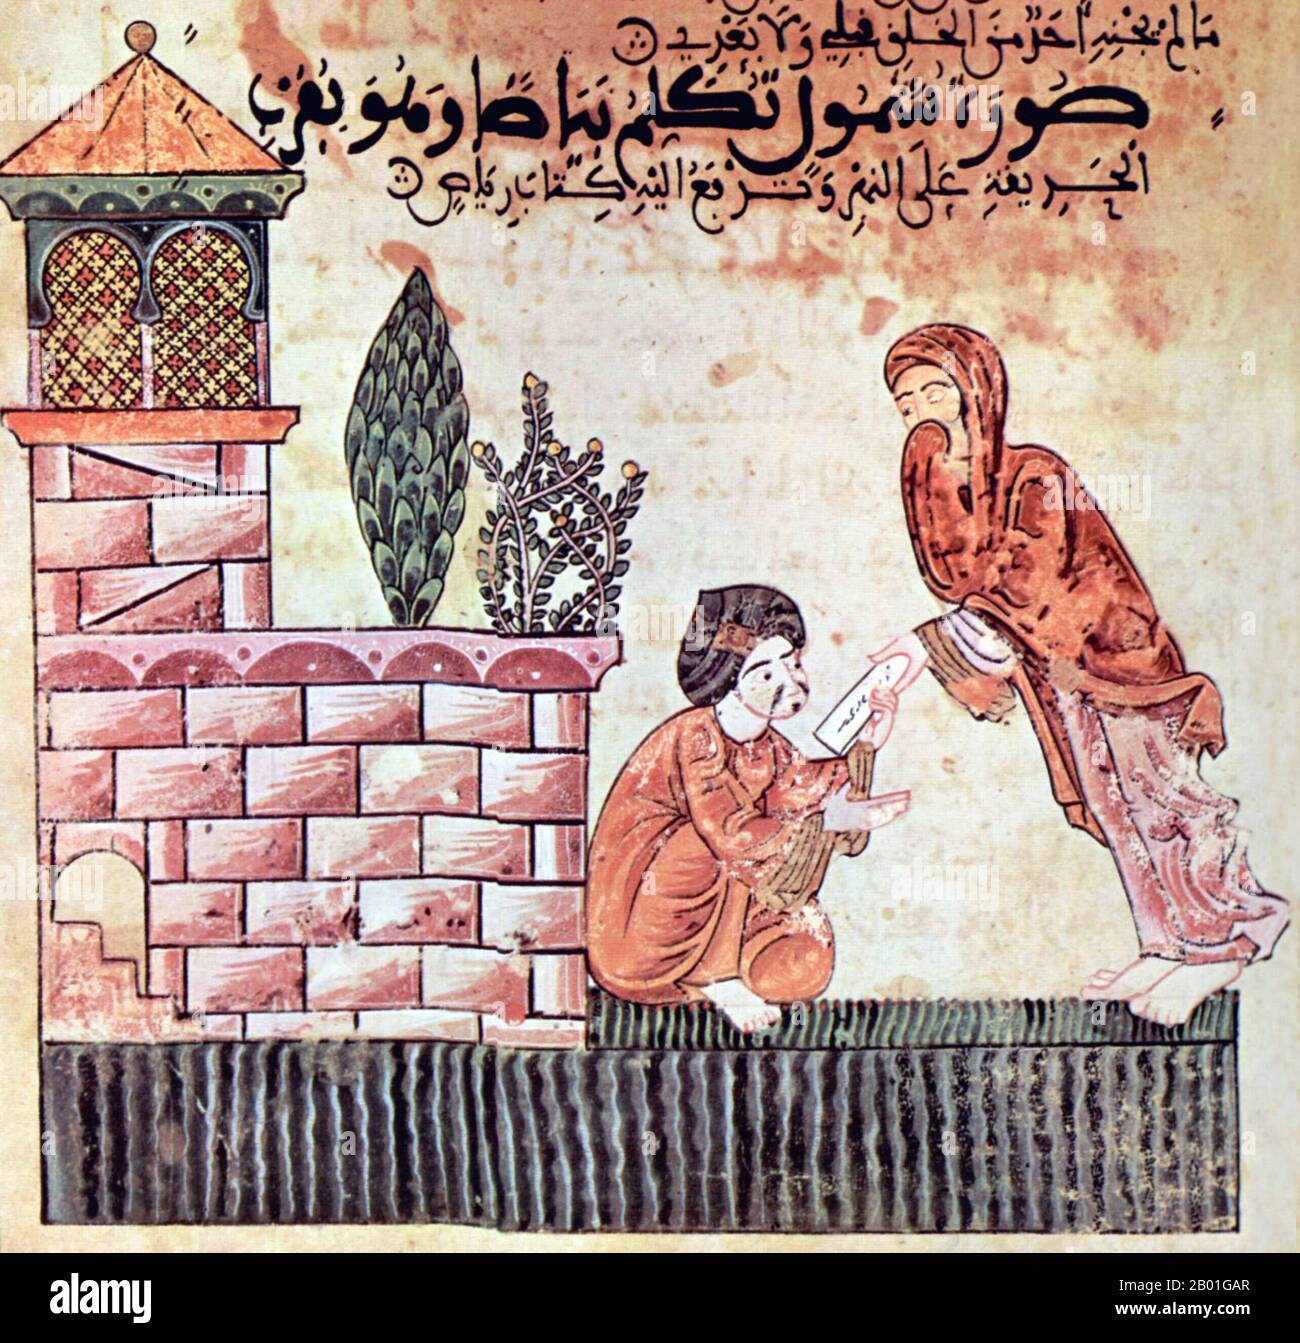 Spanien: Eine Illustration aus der Geschichte von Bayad und Riyad, Al-Andalus (Islamisches Andalusien), Ende des 12. Jahrhunderts. Hadith Bayāḍ wa Riyāḍ (die Geschichte von Bayad und Riyad) oder Qissat Bayad wa Riyad ist eine arabische Liebesgeschichte aus dem 13. Jahrhundert. Die Hauptfiguren der Geschichte sind Bayad, ein Handelssohn und ein Ausländer aus Damaskus, und Riyad, ein gut ausgebildetes Mädchen am Hof eines unbenannten Hajib (Wesir/Minister) des Irak und einer „Lady“ (al-sayyida). Das Hadith Bayad wa Riyad soll das einzige illustrierte Manuskript sein, das bekanntermaßen von mehr als acht Jahrhunderten muslimischer Präsenz in Spanien überlebt hat. Stockfoto